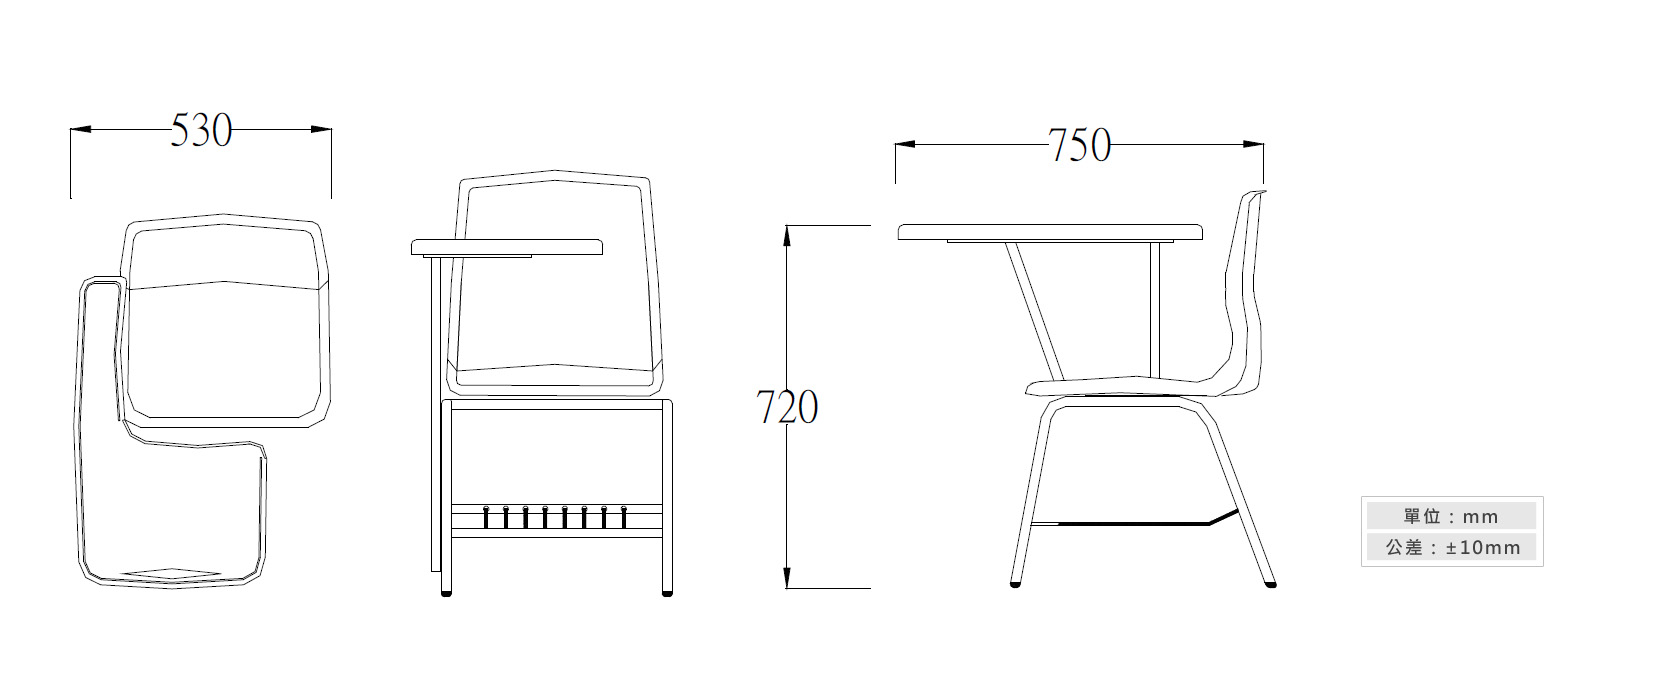 2-33B 學生單人課桌椅材質說明